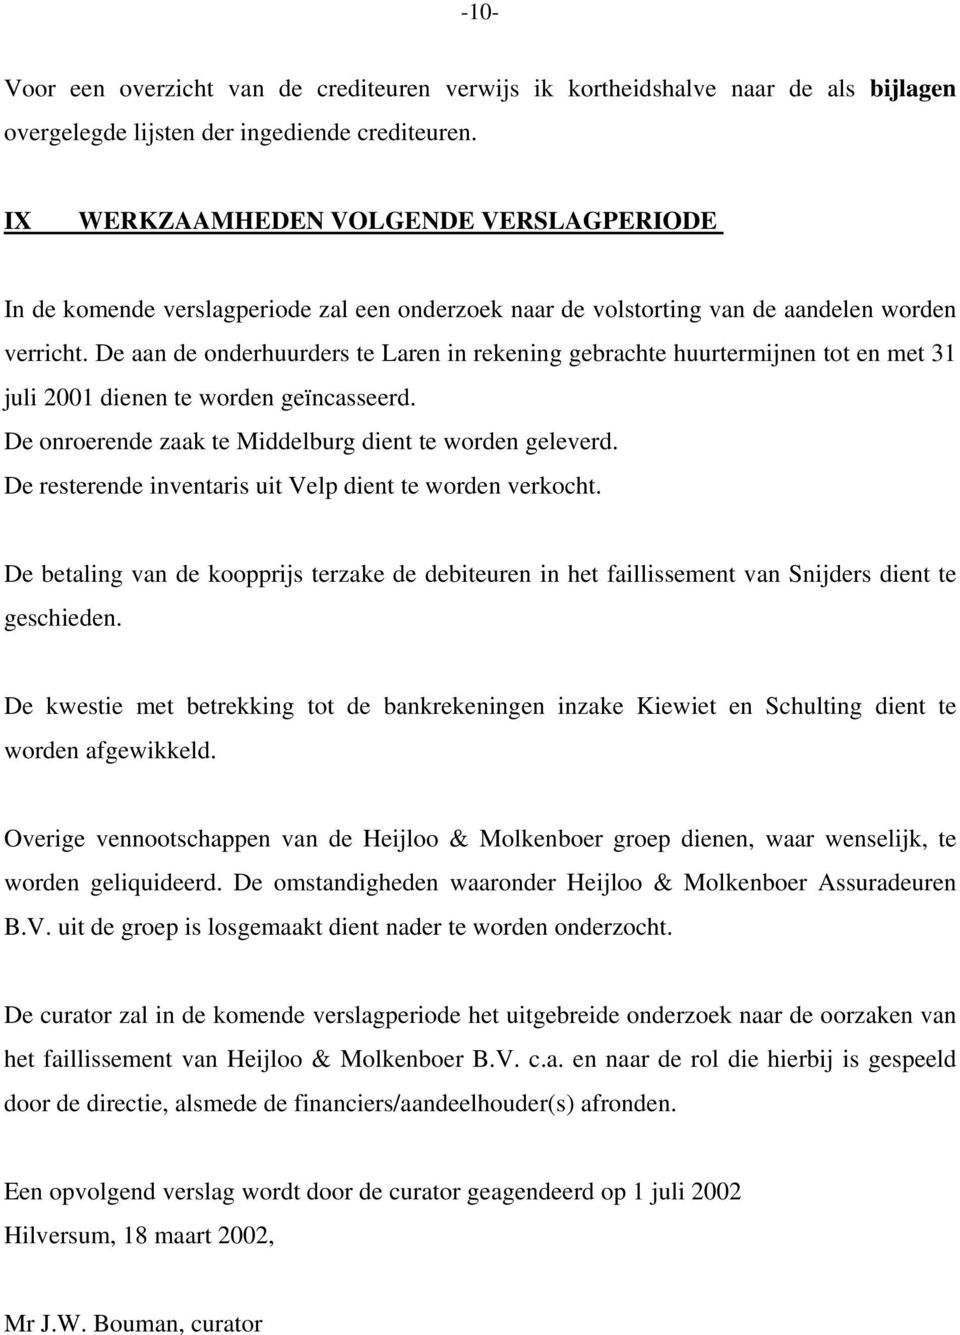 De onroerende zaak te Middelburg dient te worden geleverd. De resterende inventaris uit Velp dient te worden verkocht.